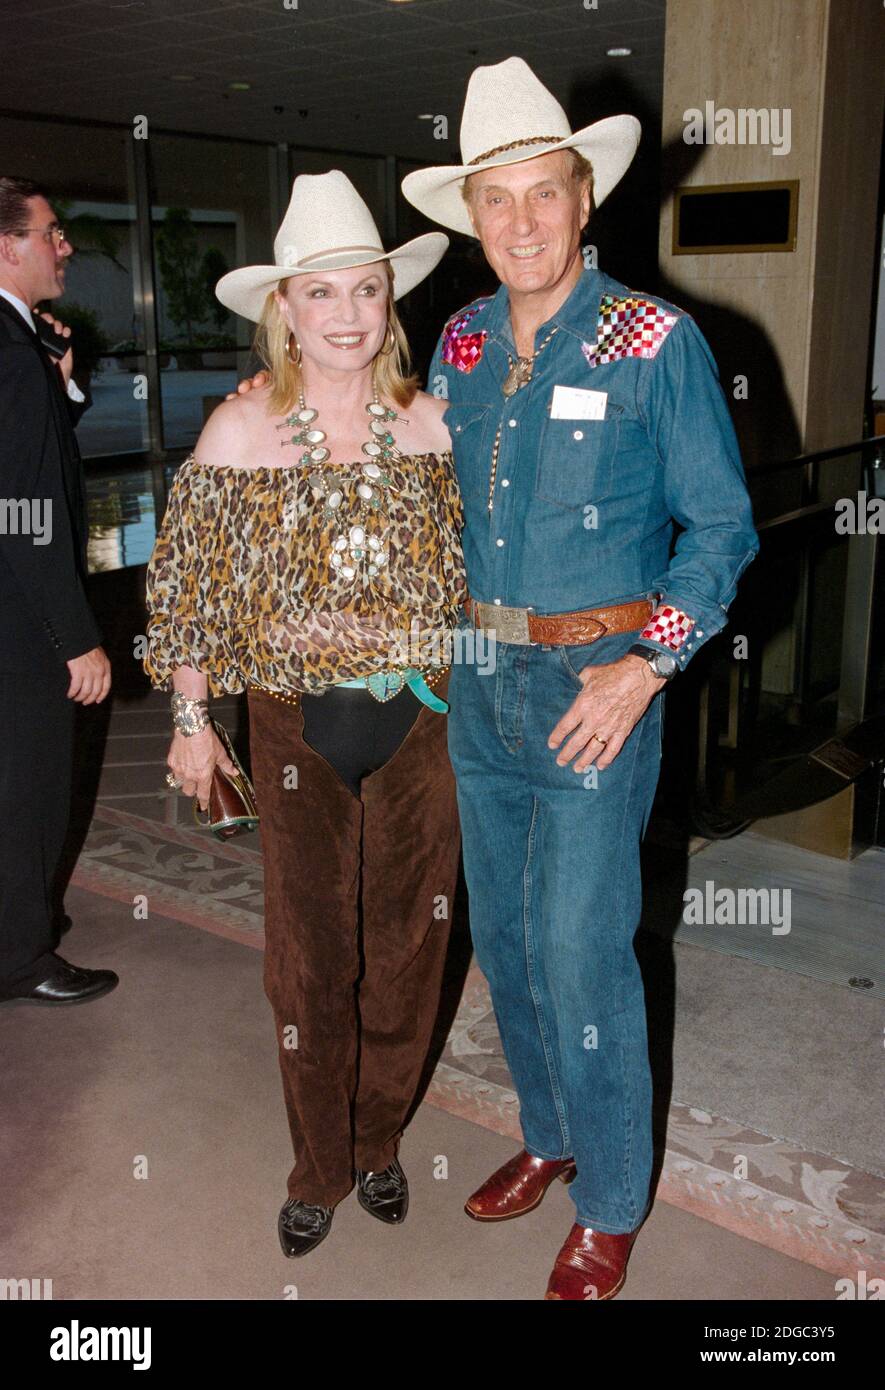 ARCHIVIO: LOS ANGELES, CA. 12 agosto 1995: Attore Robert Stack & moglie al Golden Boot Awards al Century Plaza Hotel di Los Angeles. Foto del file © Paul Smith/Caratteristiche Foto Stock